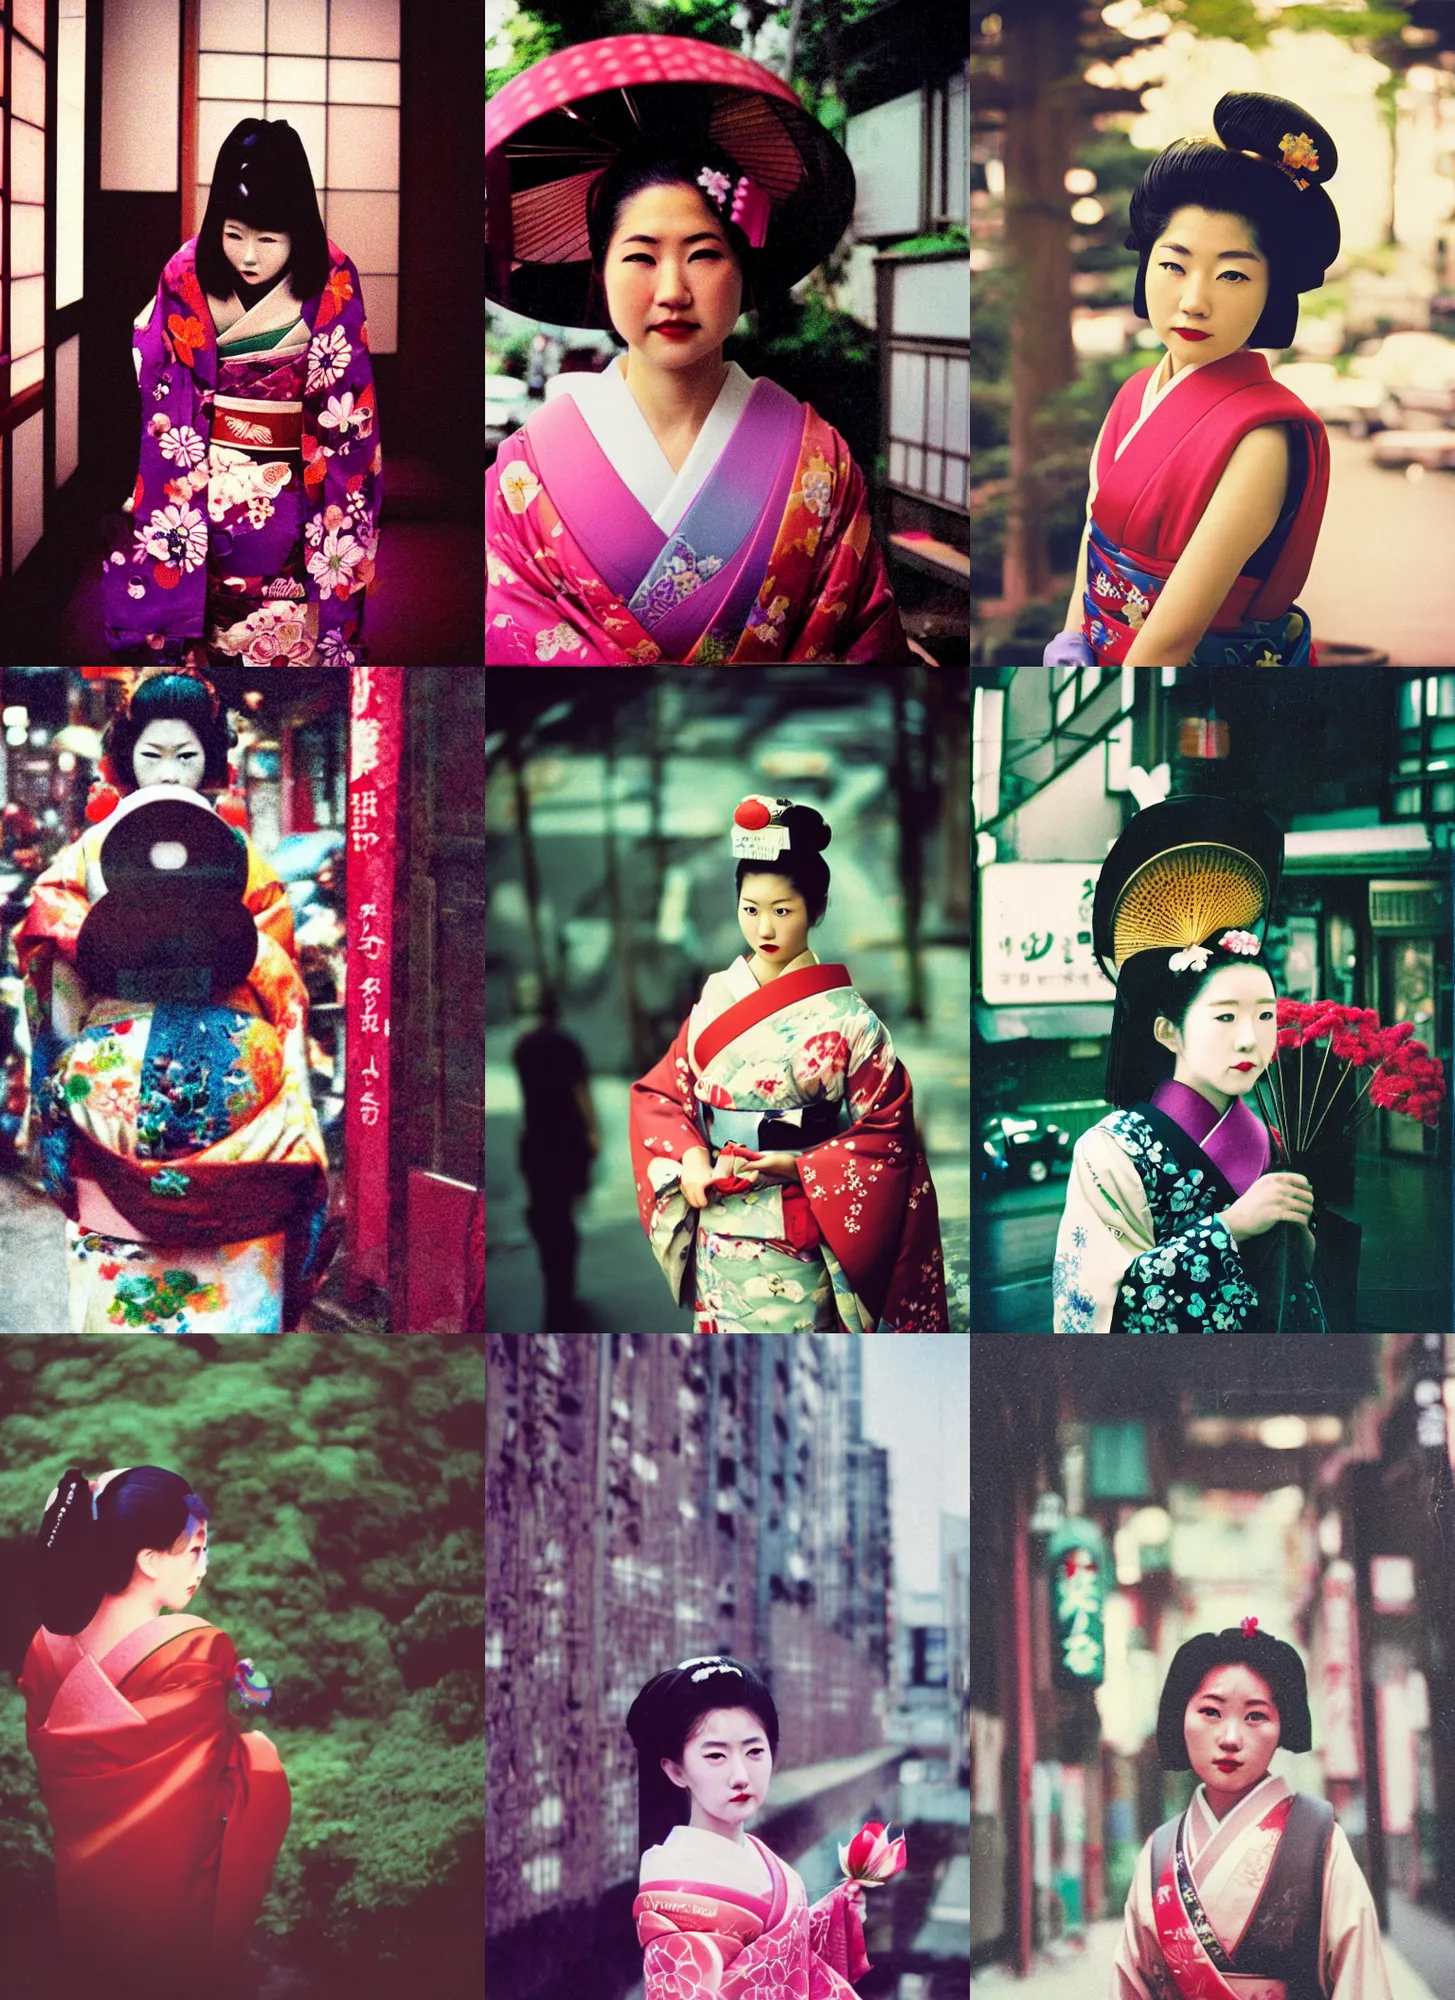 Prompt: Portrait Photograph of a Japanese Geisha LomoChrome Metropolis XR 100–400 Film